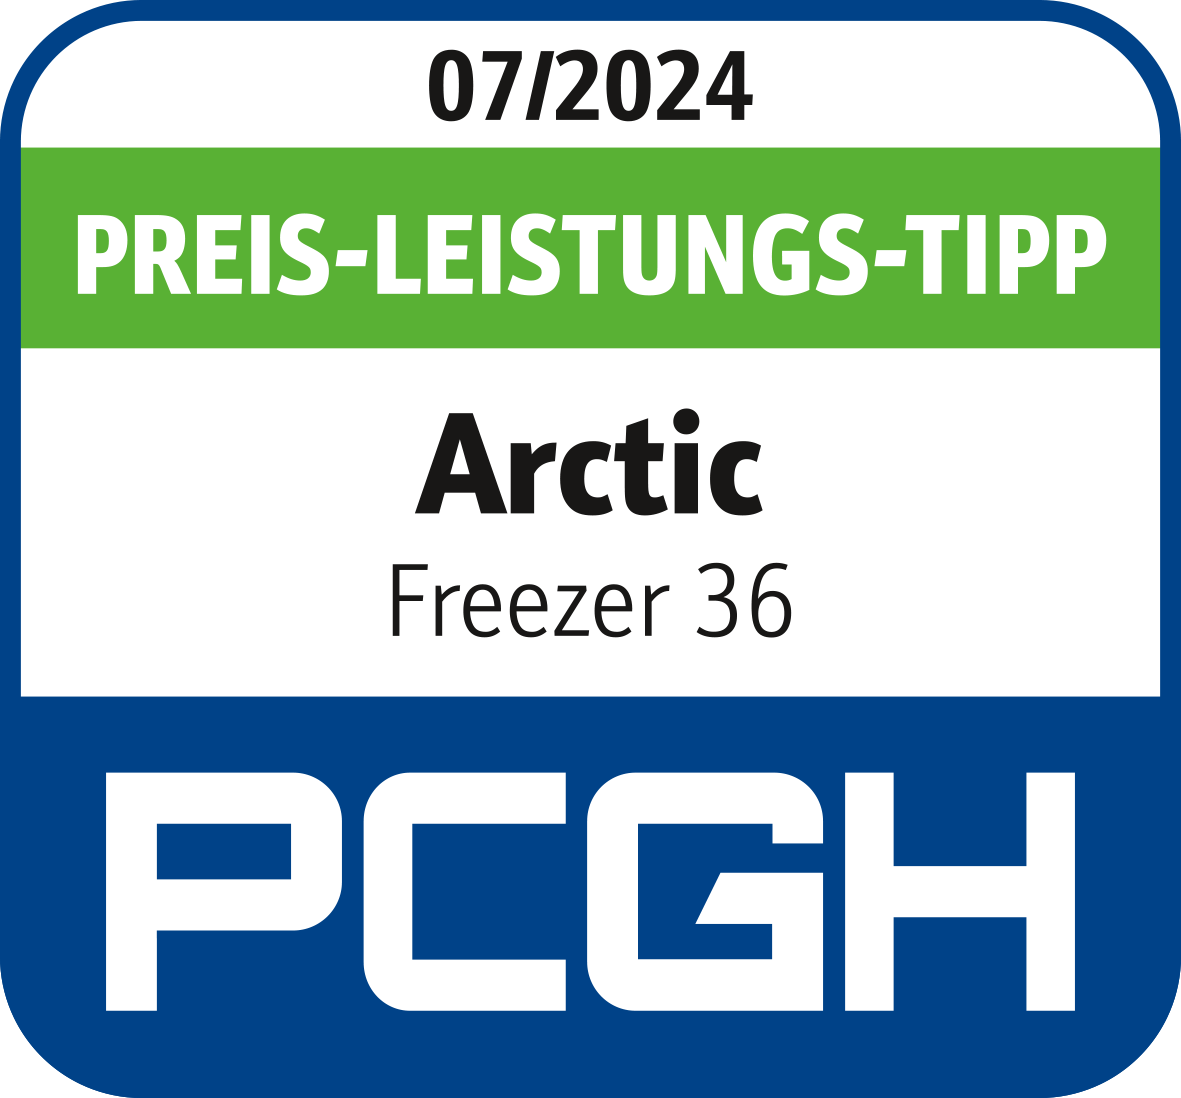 PCHG Freezer 36 award